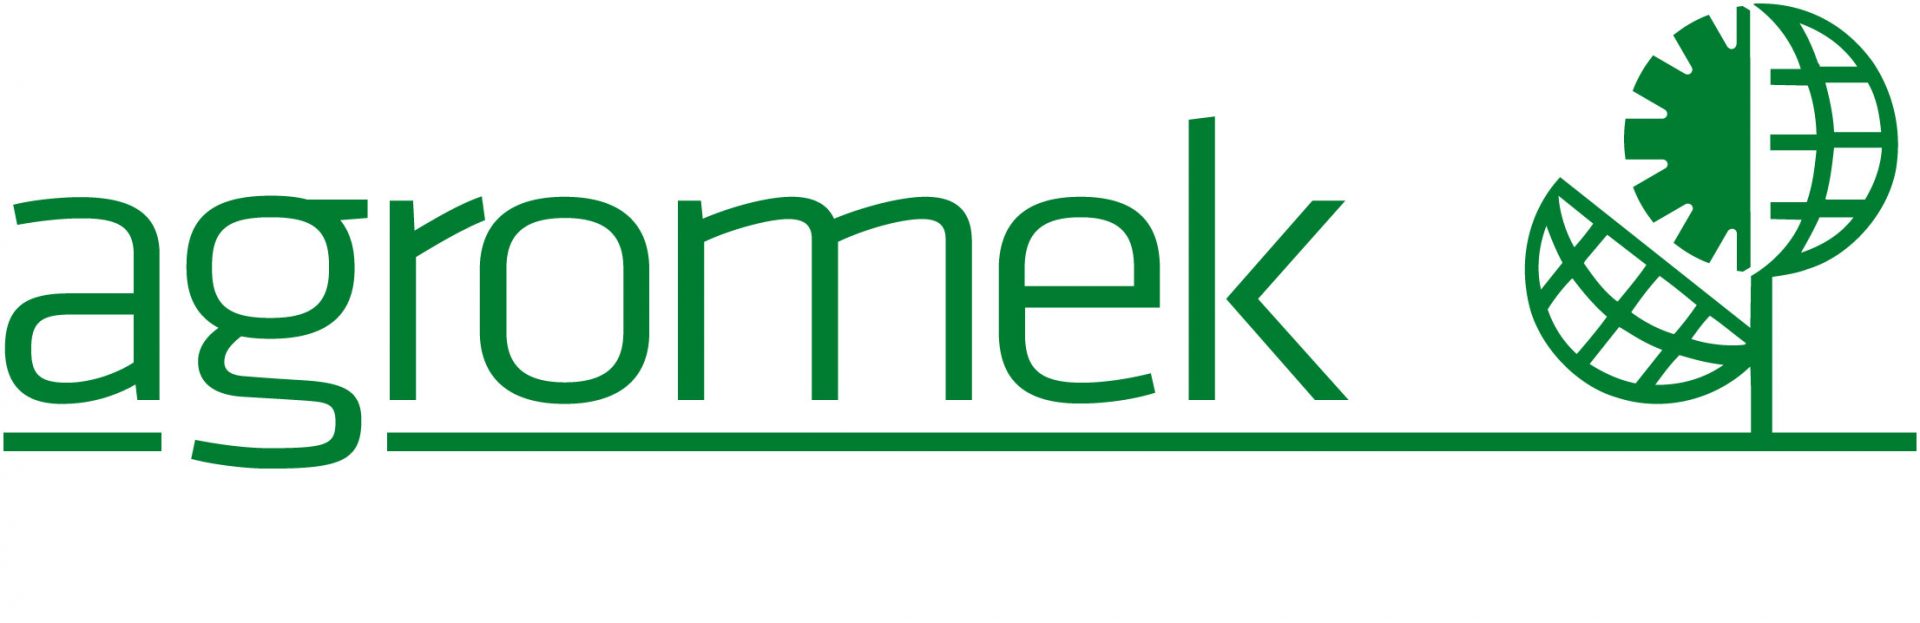 agromek-logo-groen